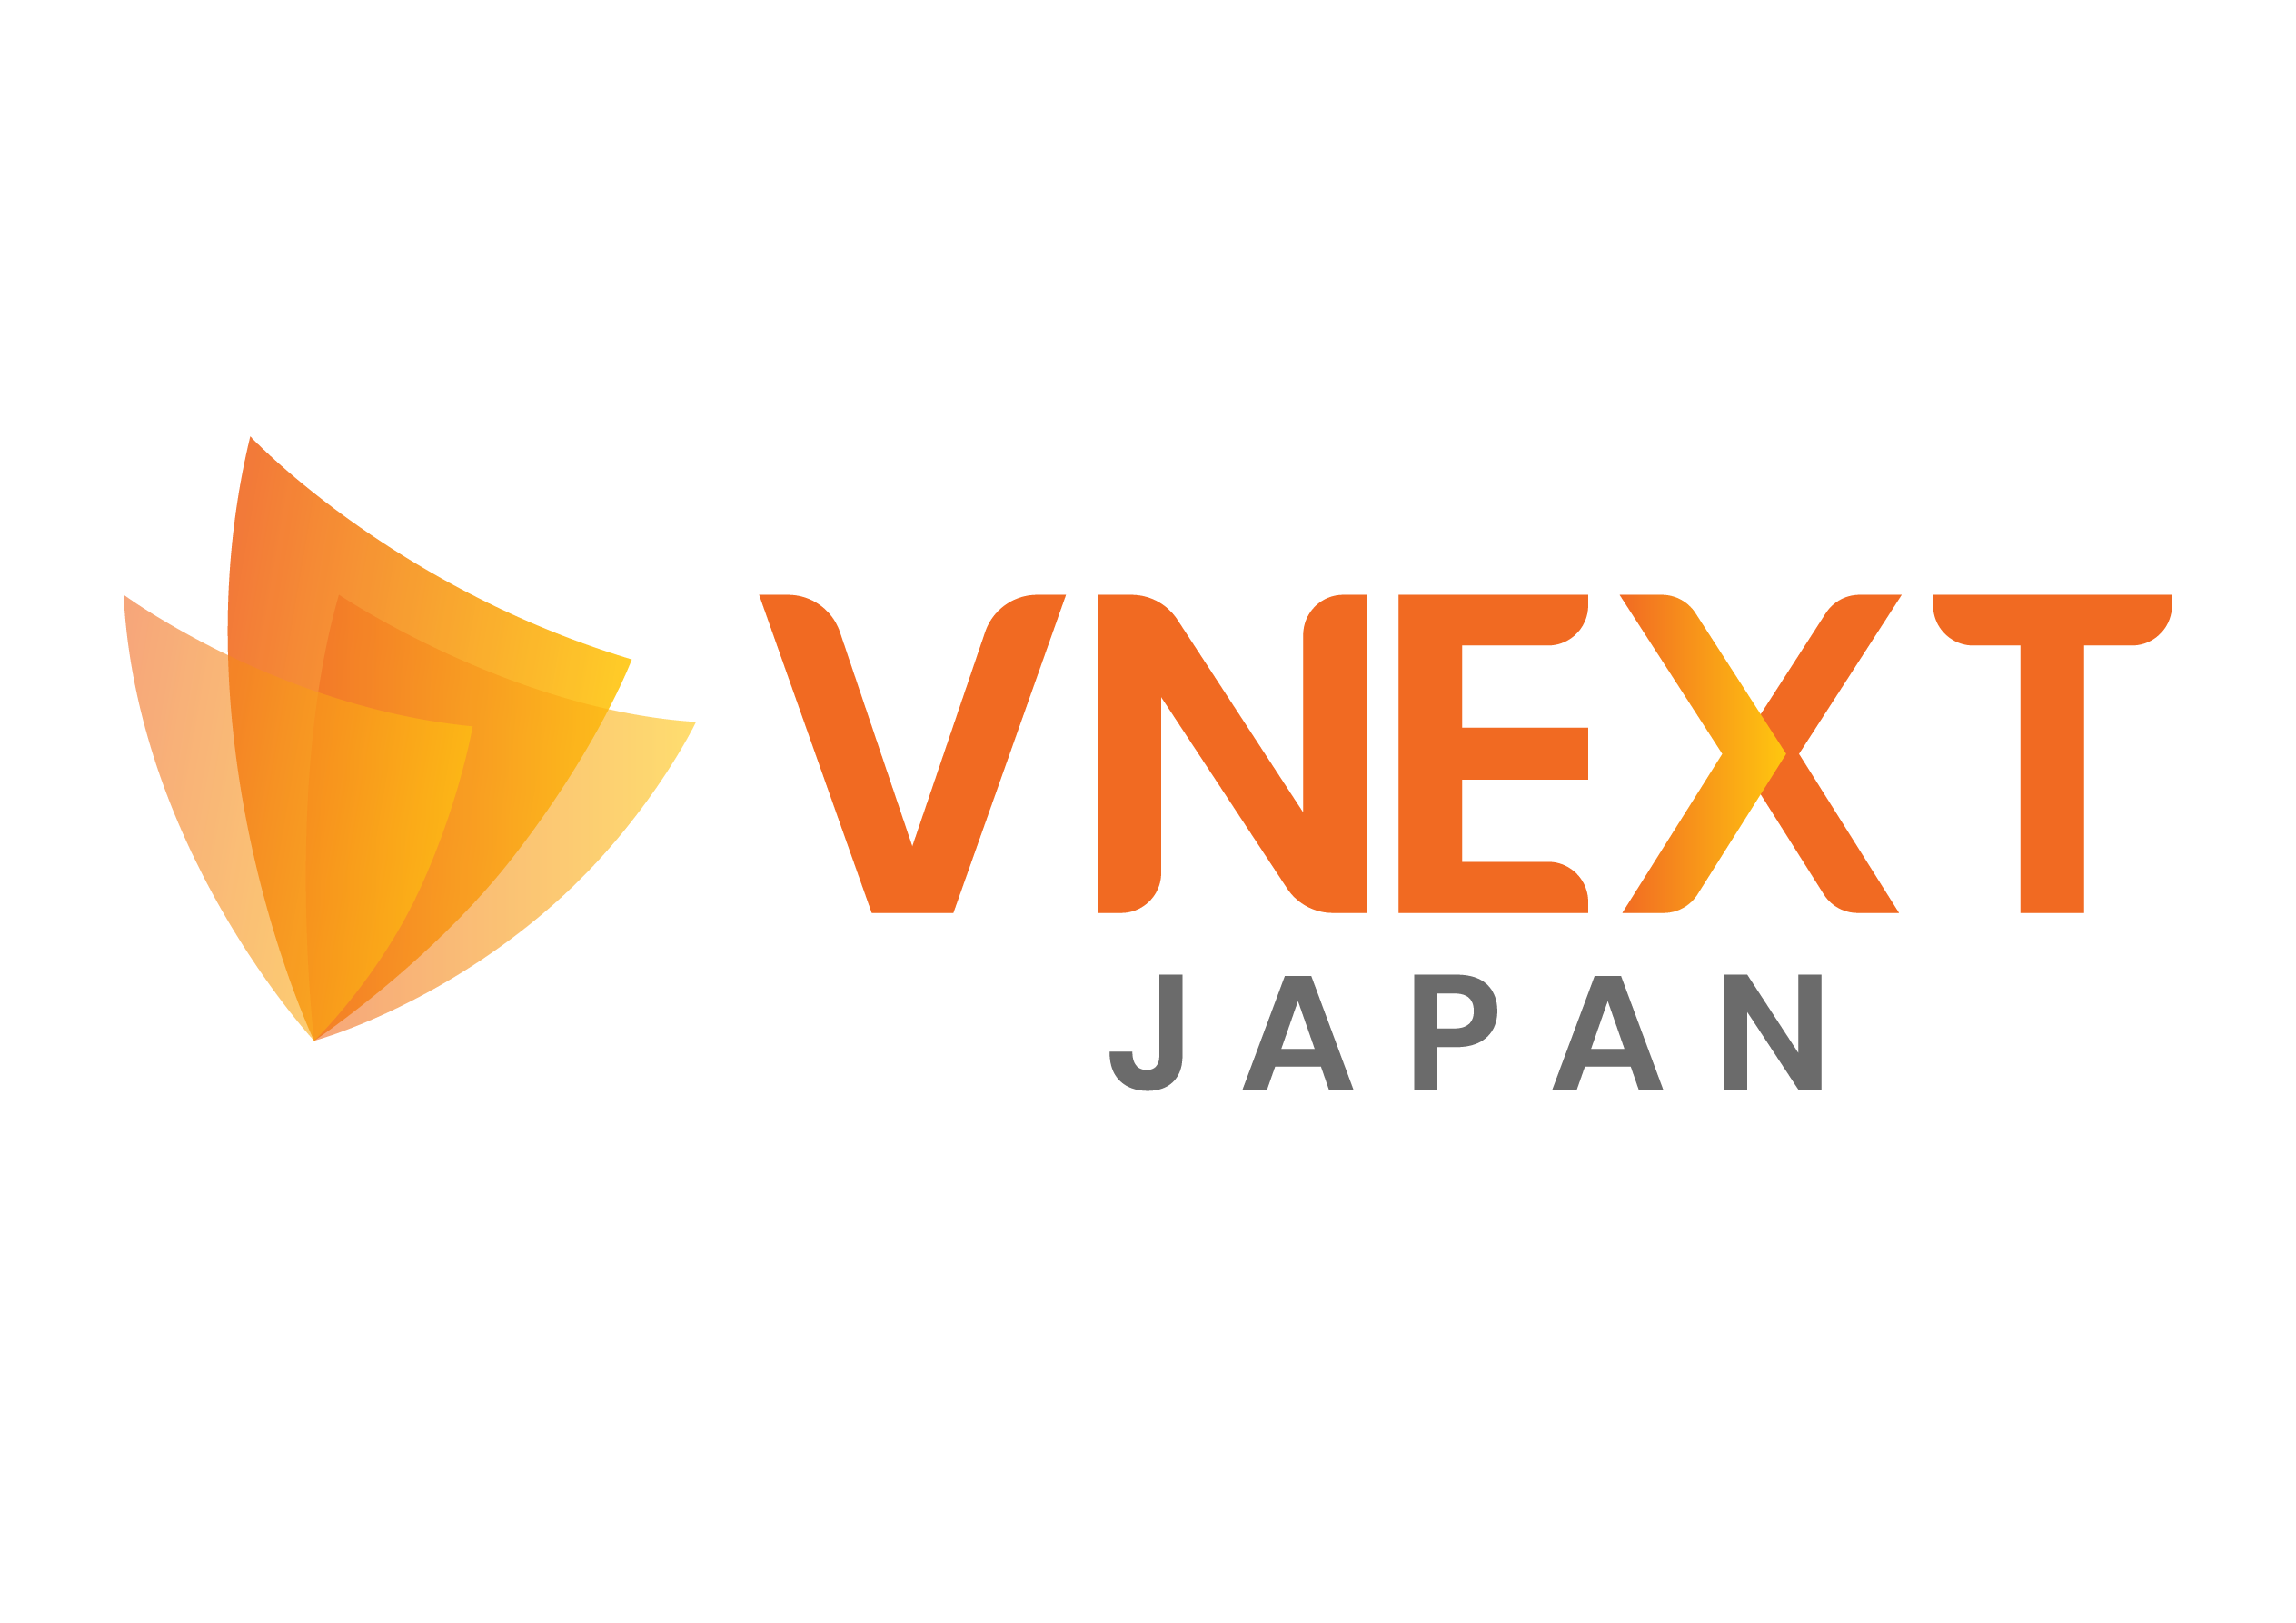 VNEXT JAPAN